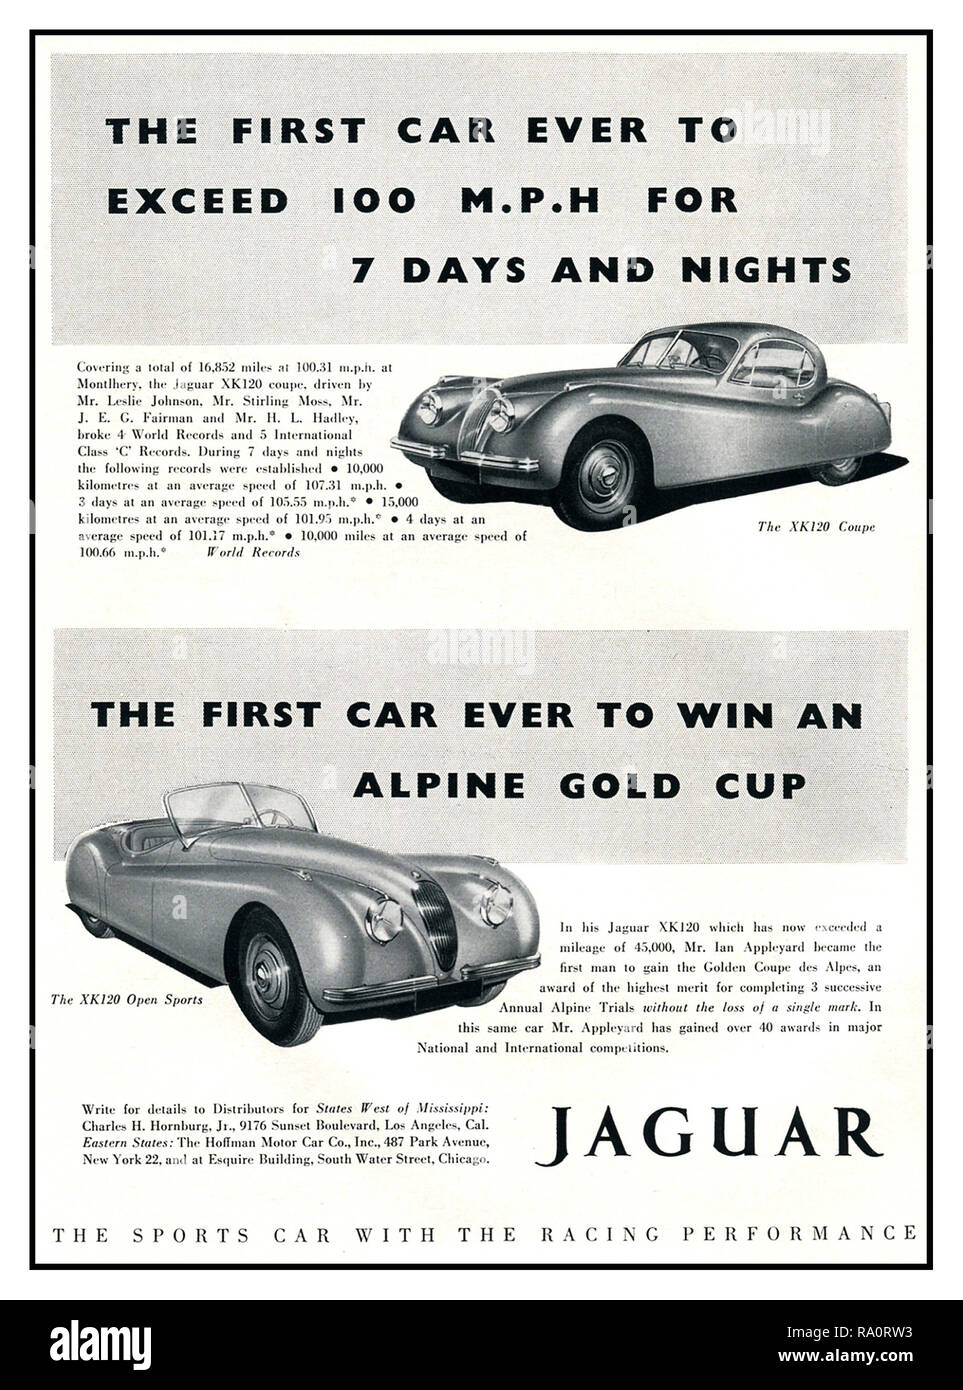 1950 JAGUAR Vintage publicité pour Jaguar XK120 super sports cars Le Coupé et Open Sports 'la production la plus rapide voiture de sport dans le monde, d'abord pour dépasser 100mph pendant 7 jours et nuits d'endurance. La voiture la plus remarquable de sa génération conçu et construit en Grande Bretagne UK Banque D'Images